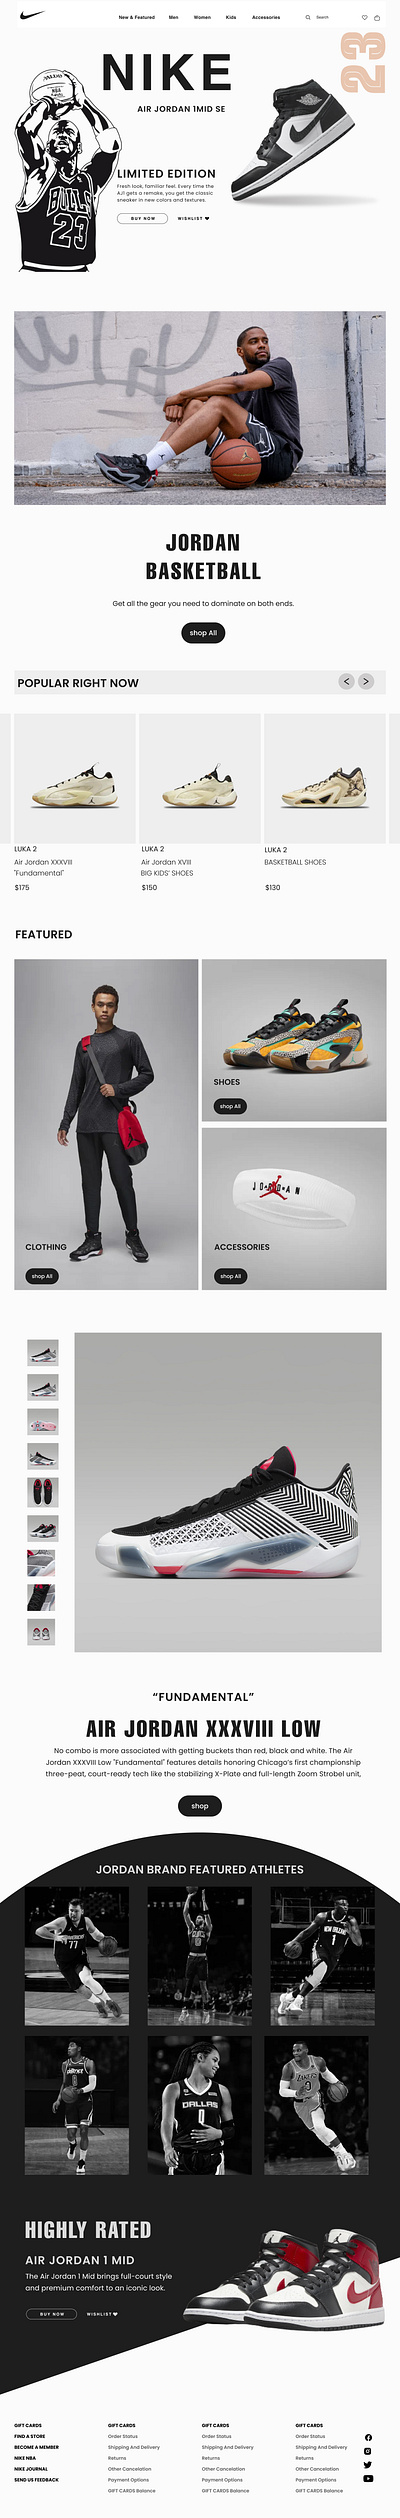 Nike website design giving tribute to Legendary MICHAEL JORDON ui